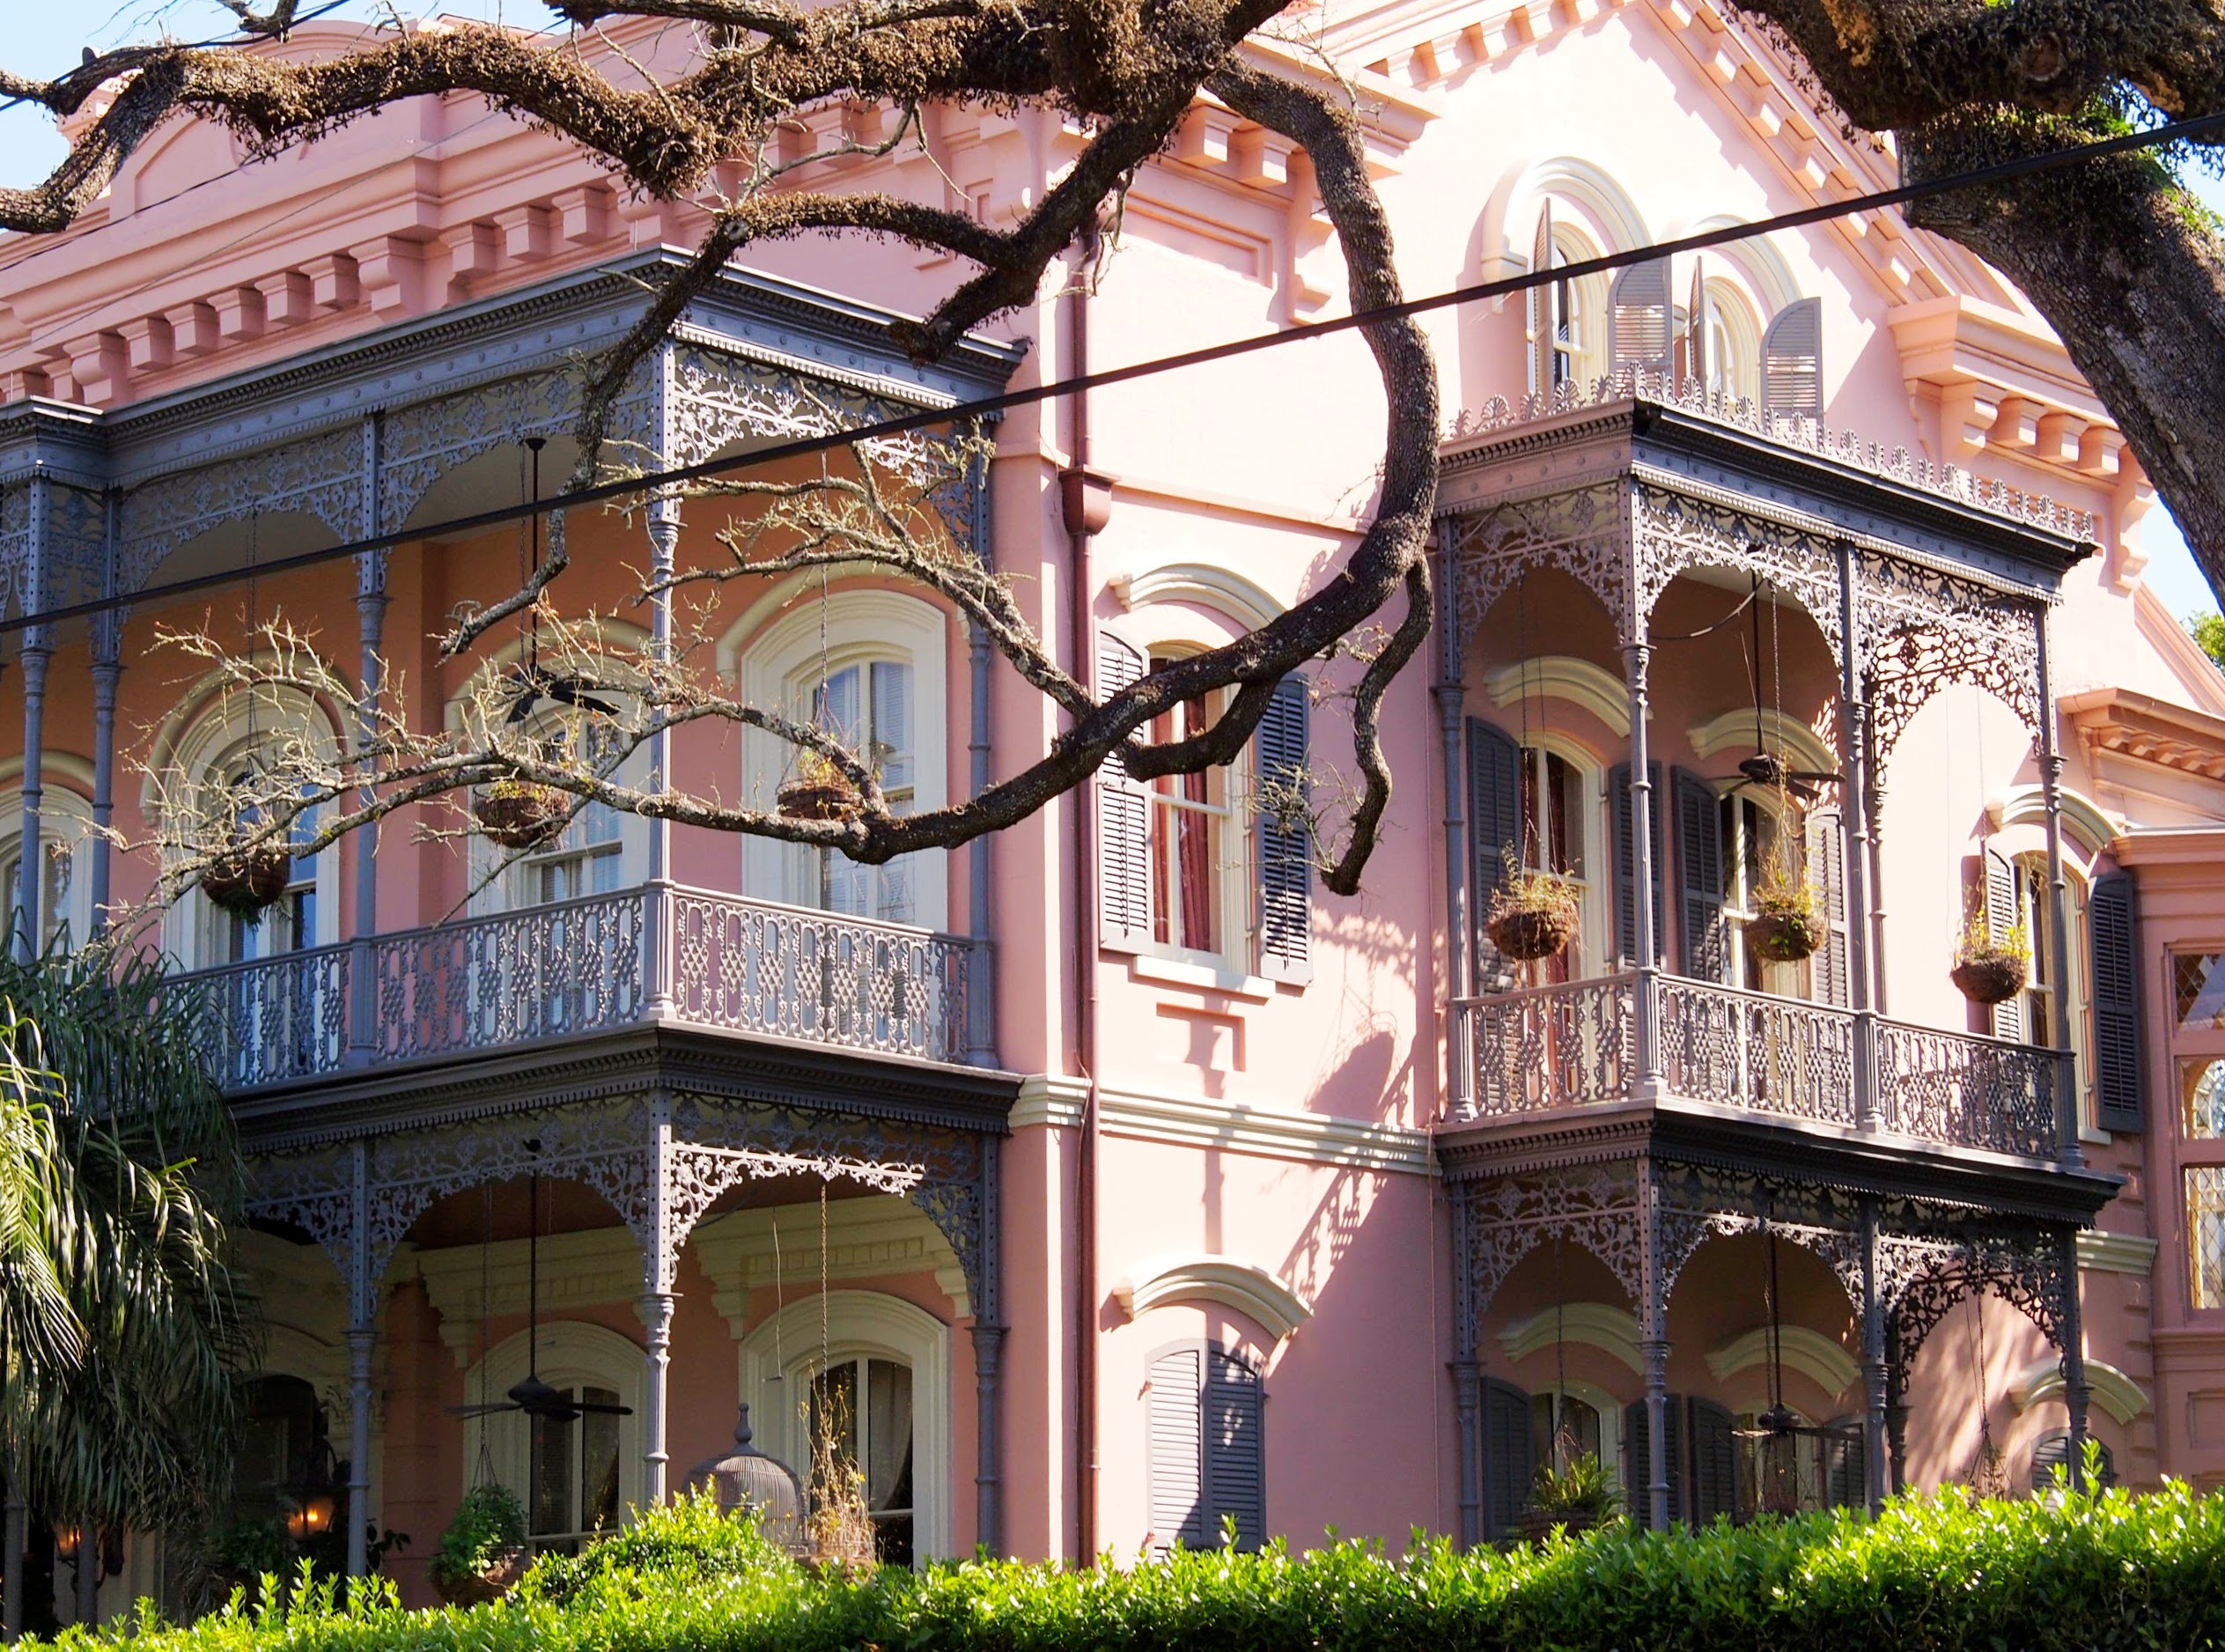 Pink mansion in New Orleans Garden District